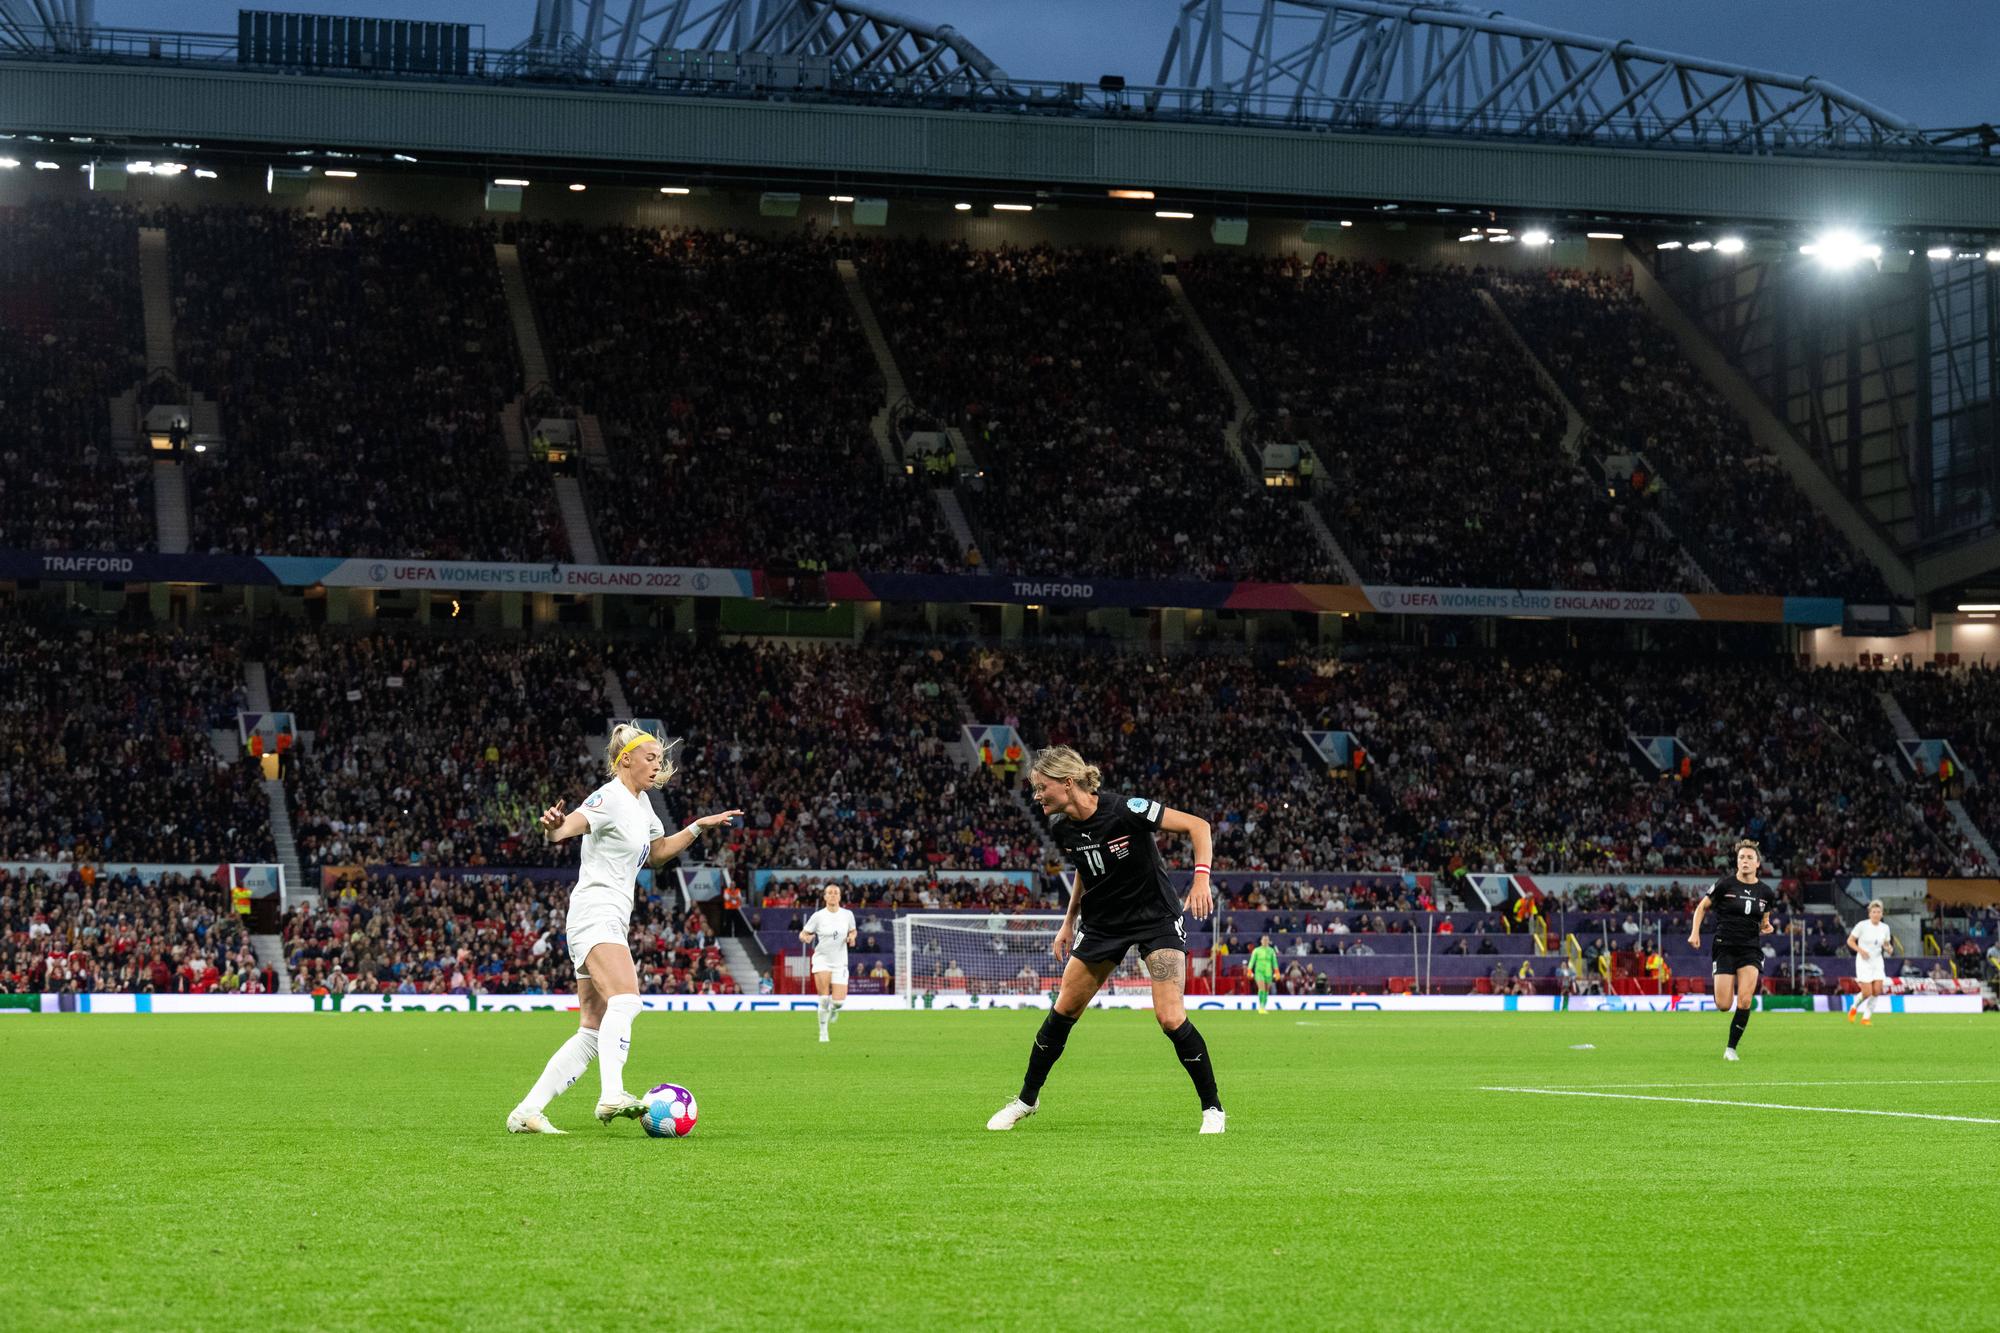 Le match d'ouverture de cet Euro dames s'est déroulé à guichets fermés dans le stade d'Old Trafford. [Imago - LUDVIG THUNMAN]